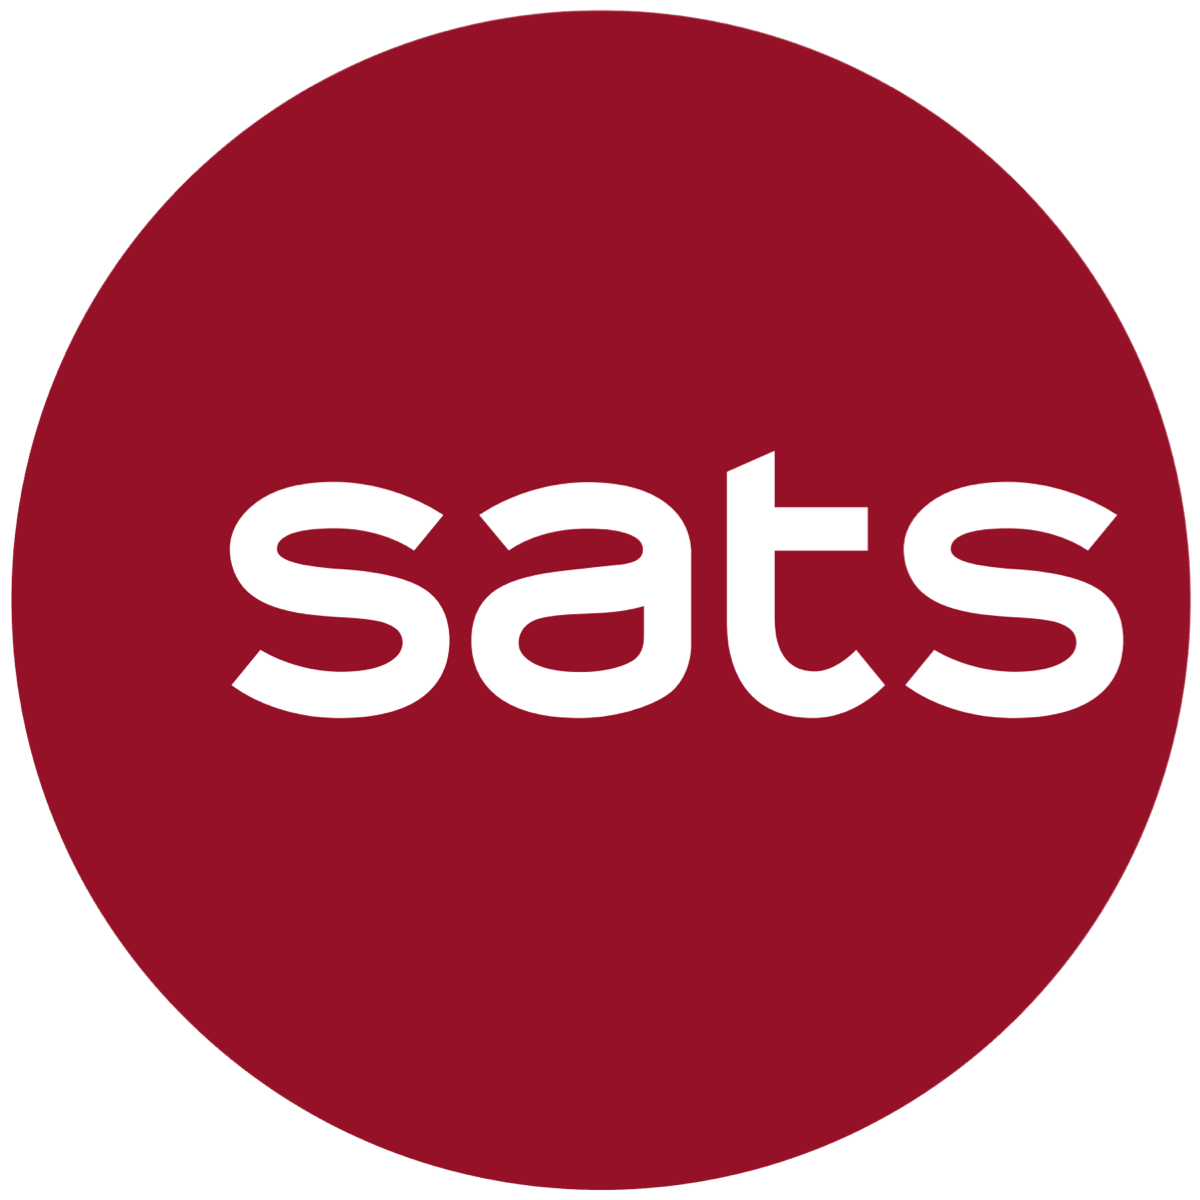 SATS (SATS SP) - Maybank Kim Eng 2017-07-24: Good Quarter Despite Cost Pressures